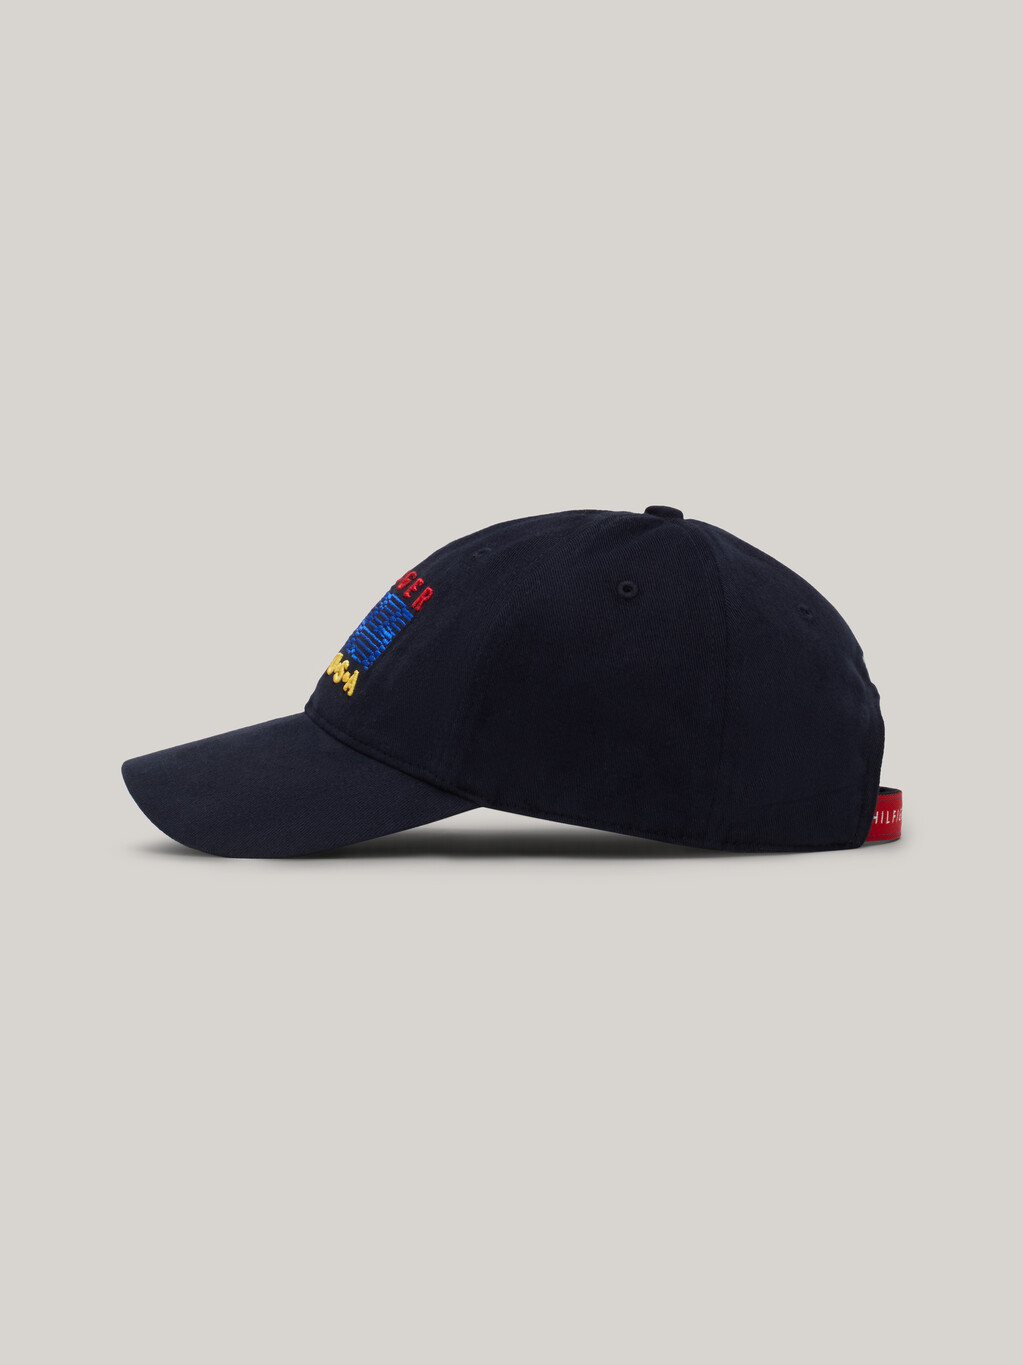 Hilfiger Team Baseball Hat, Space Blue, hi-res